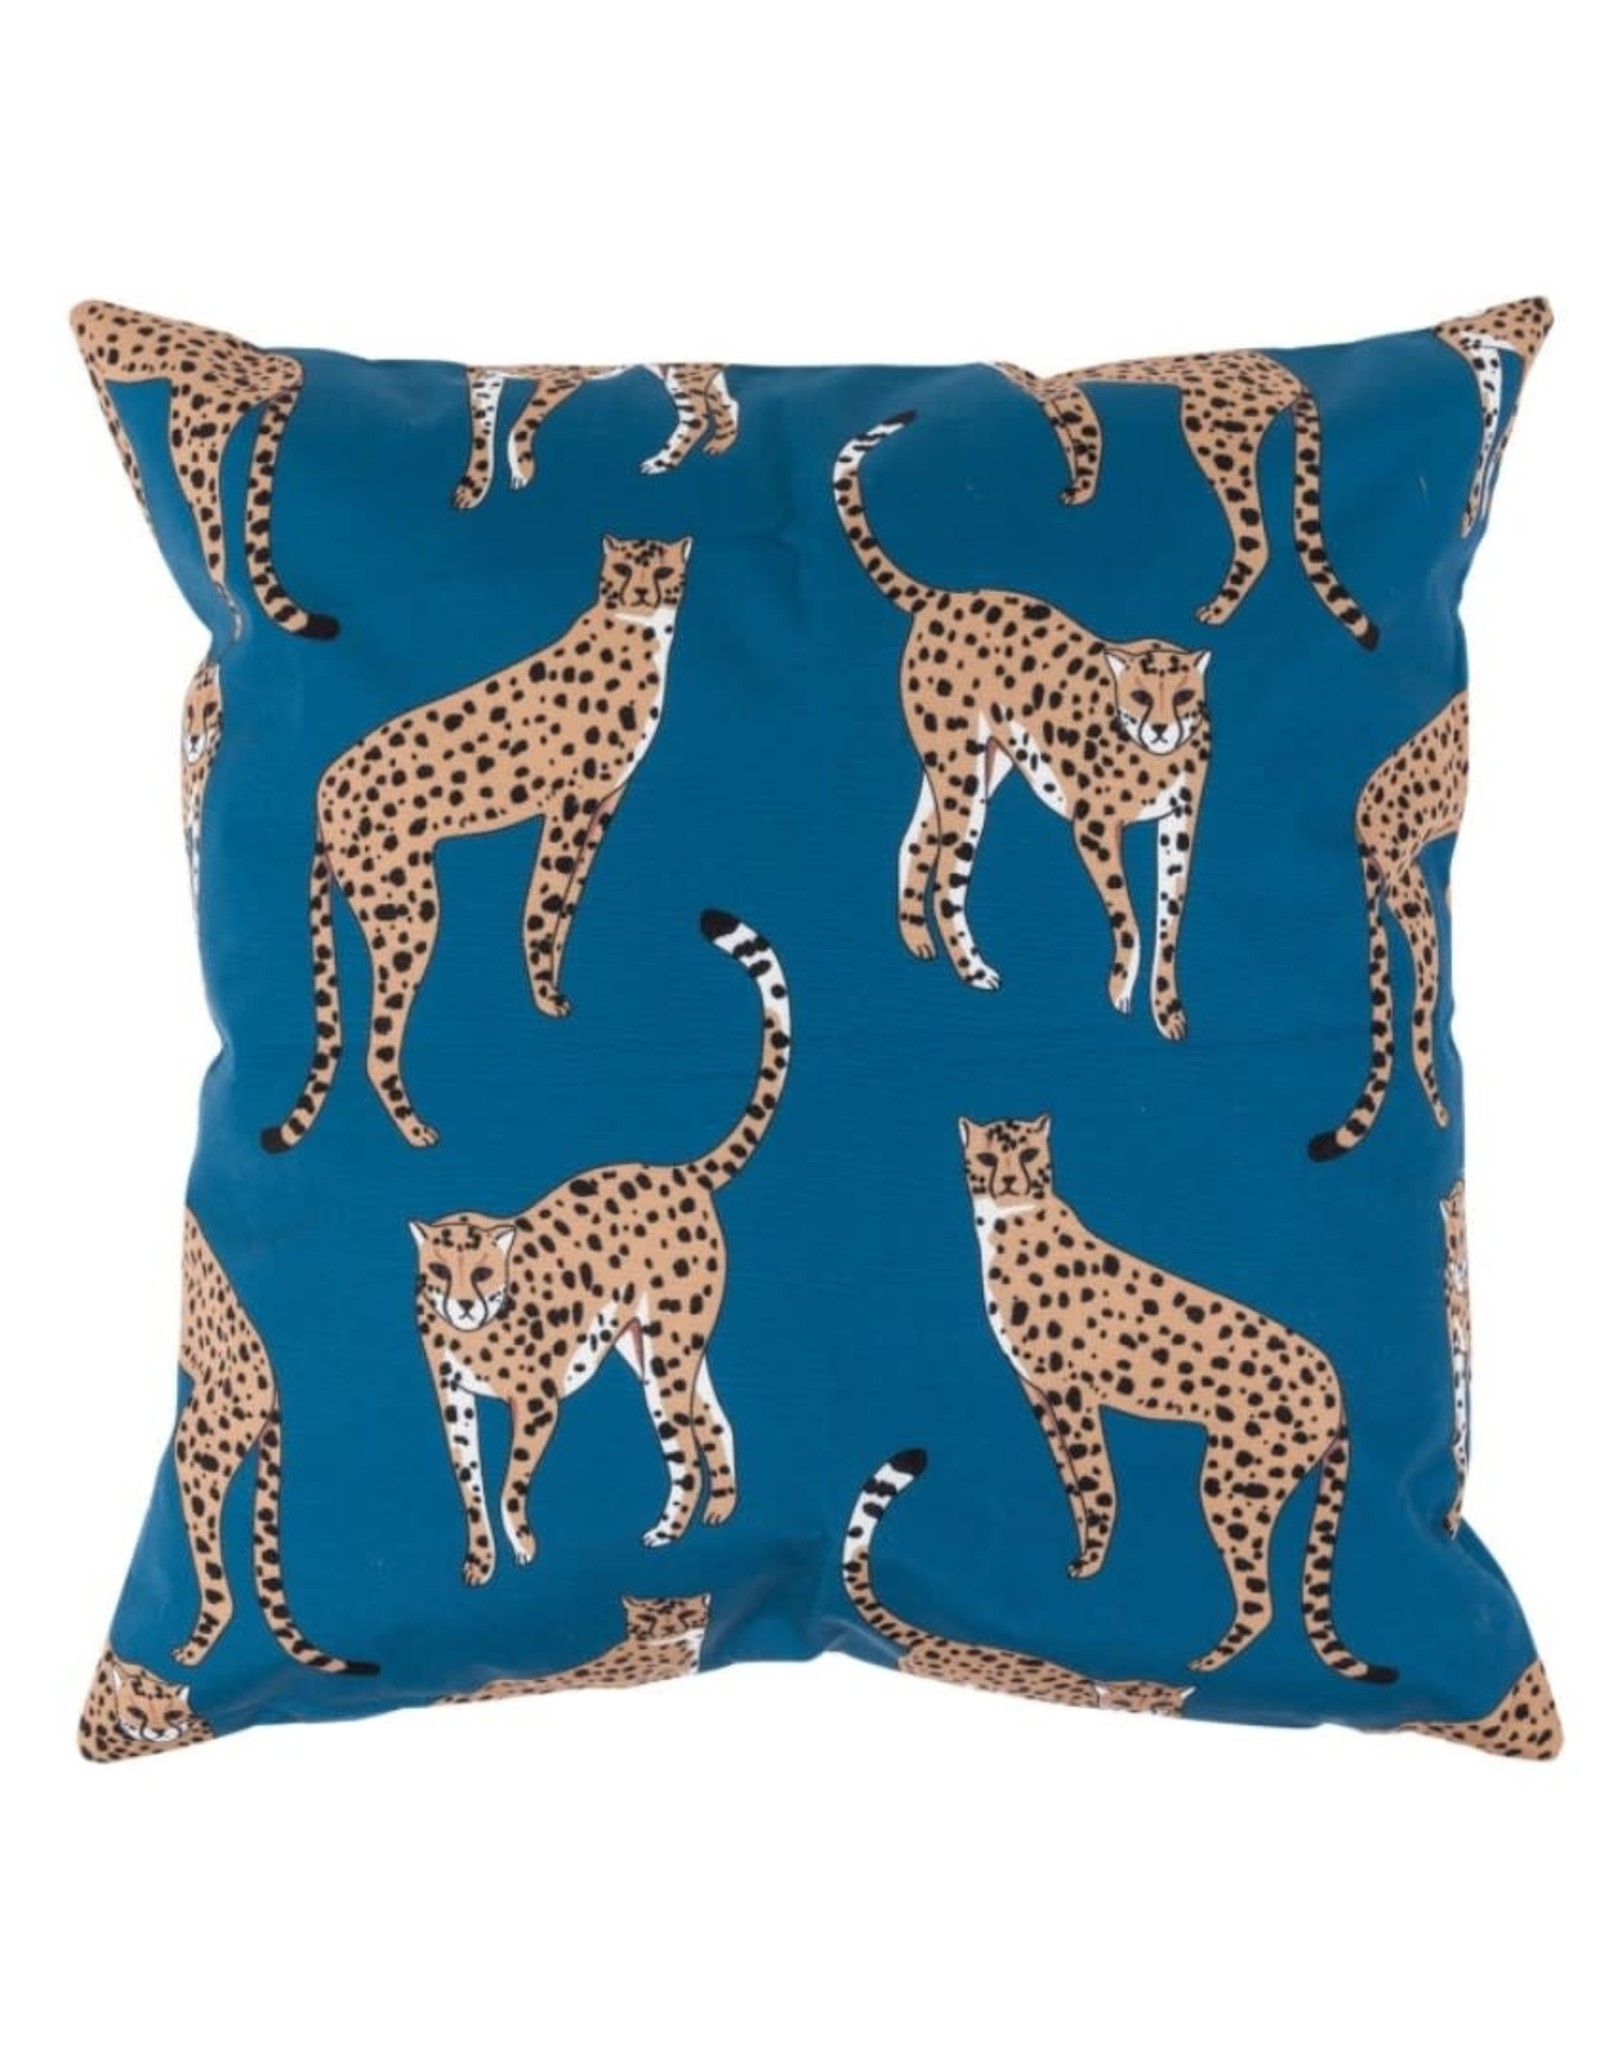 Nood Cheetah Outdoor Cushion 45x45cm Terracotta  - Atlantic  Designs